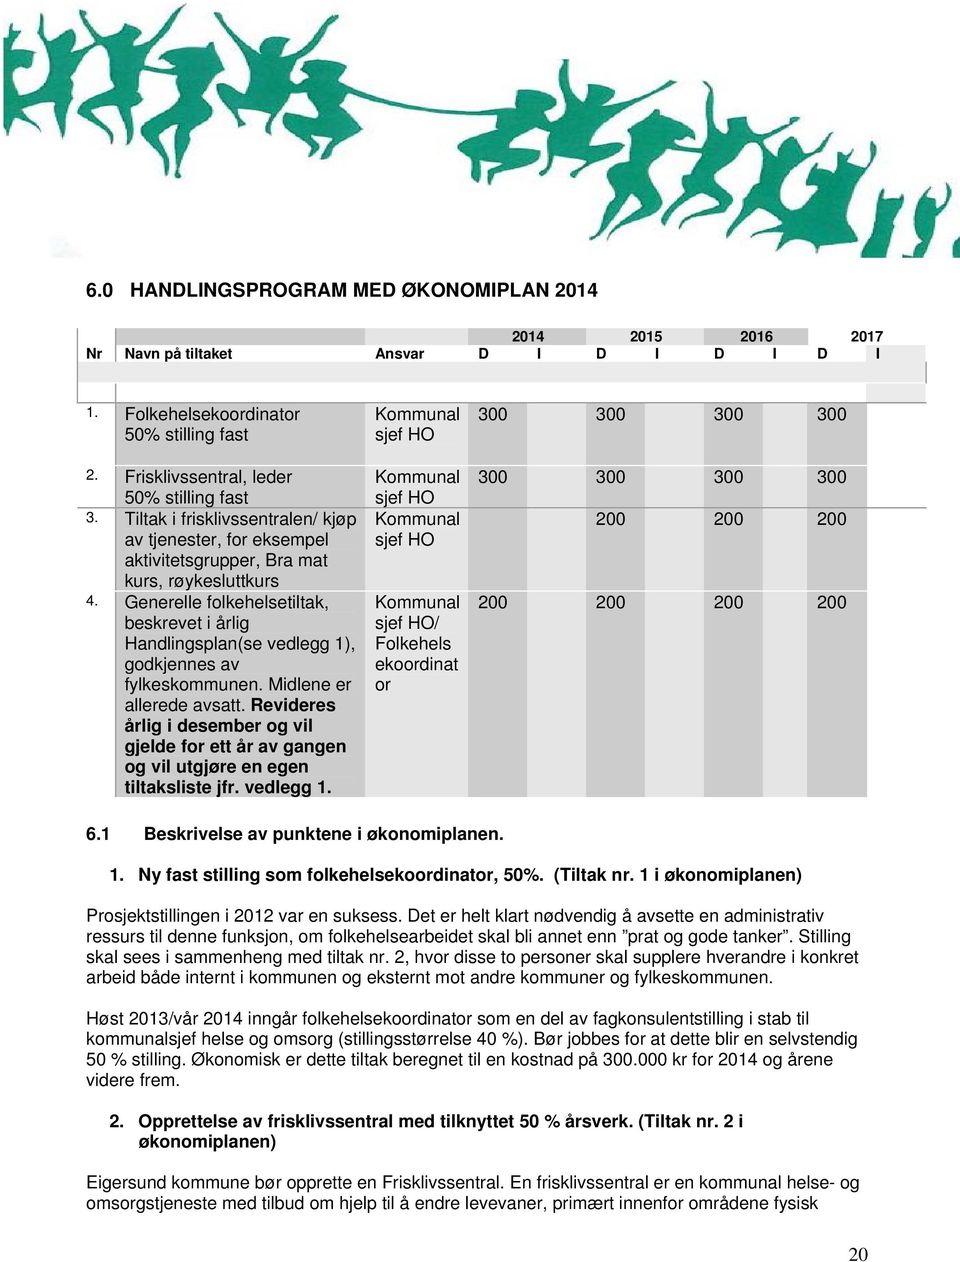 Generelle folkehelsetiltak, beskrevet i årlig Handlingsplan(se vedlegg 1), godkjennes av fylkeskommunen. Midlene er allerede avsatt.